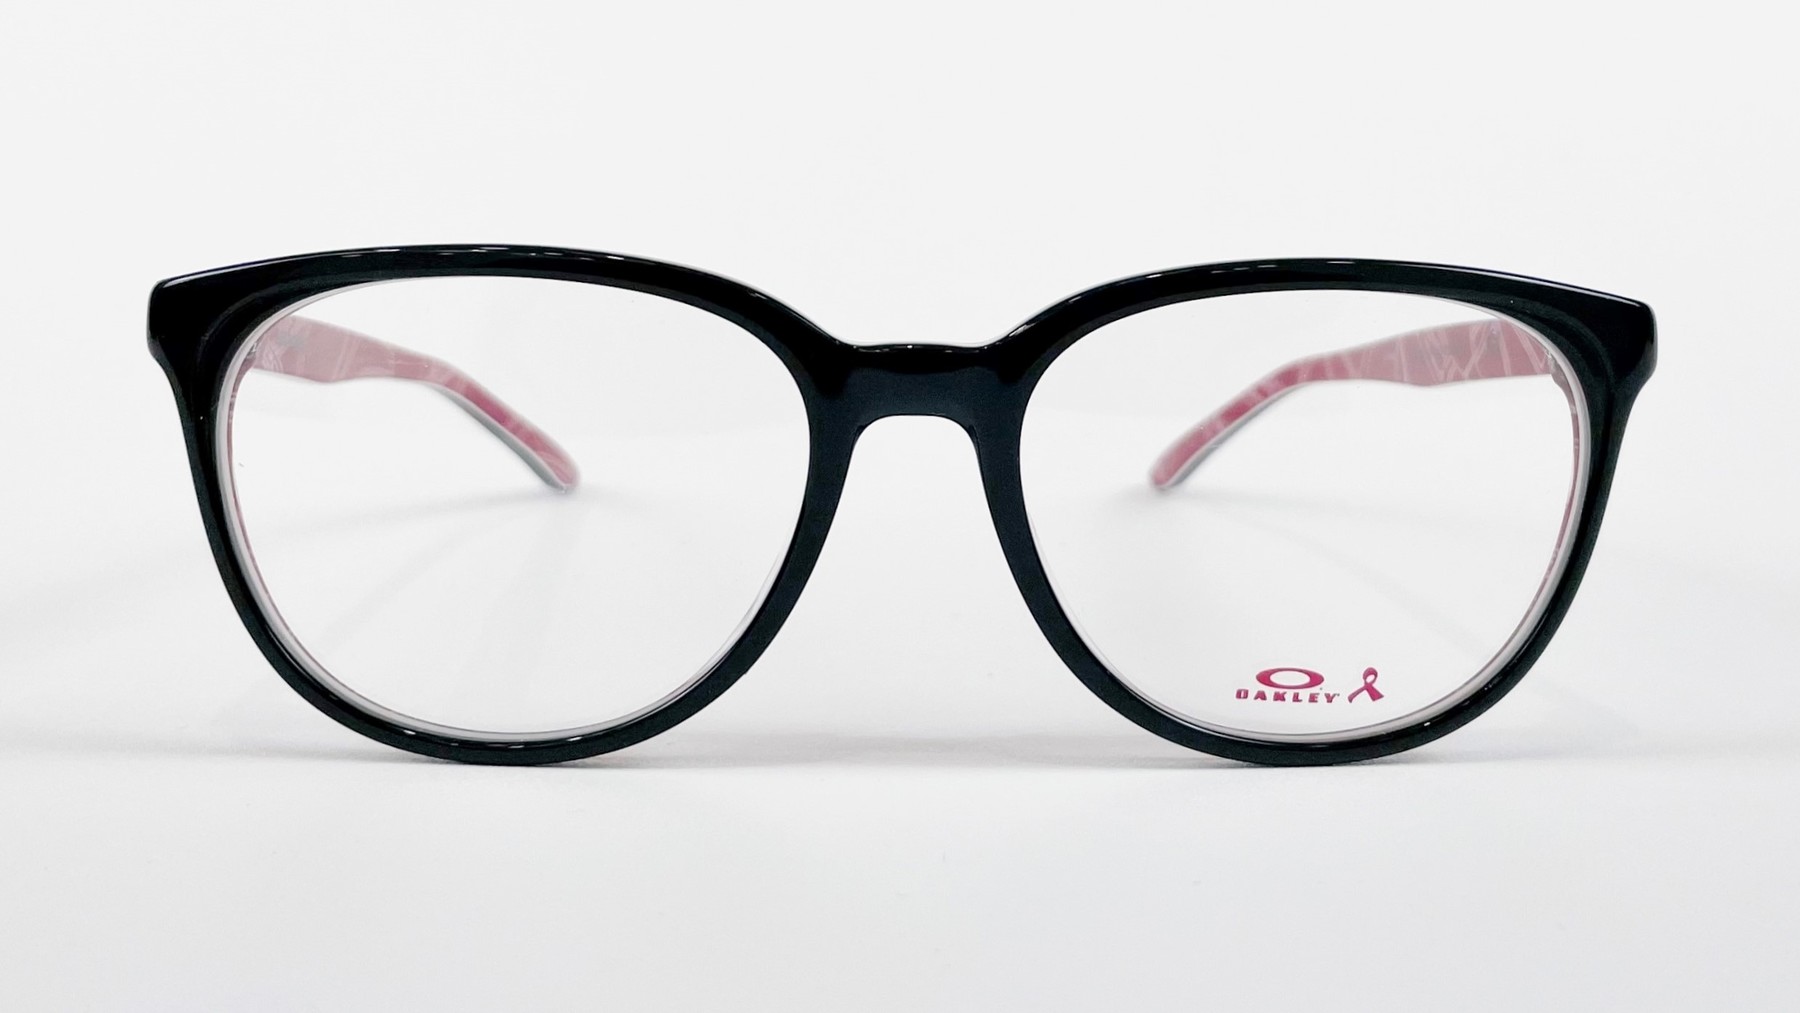 OAKLEY 001135-0652, Korean glasses, sunglasses, eyeglasses, glasses